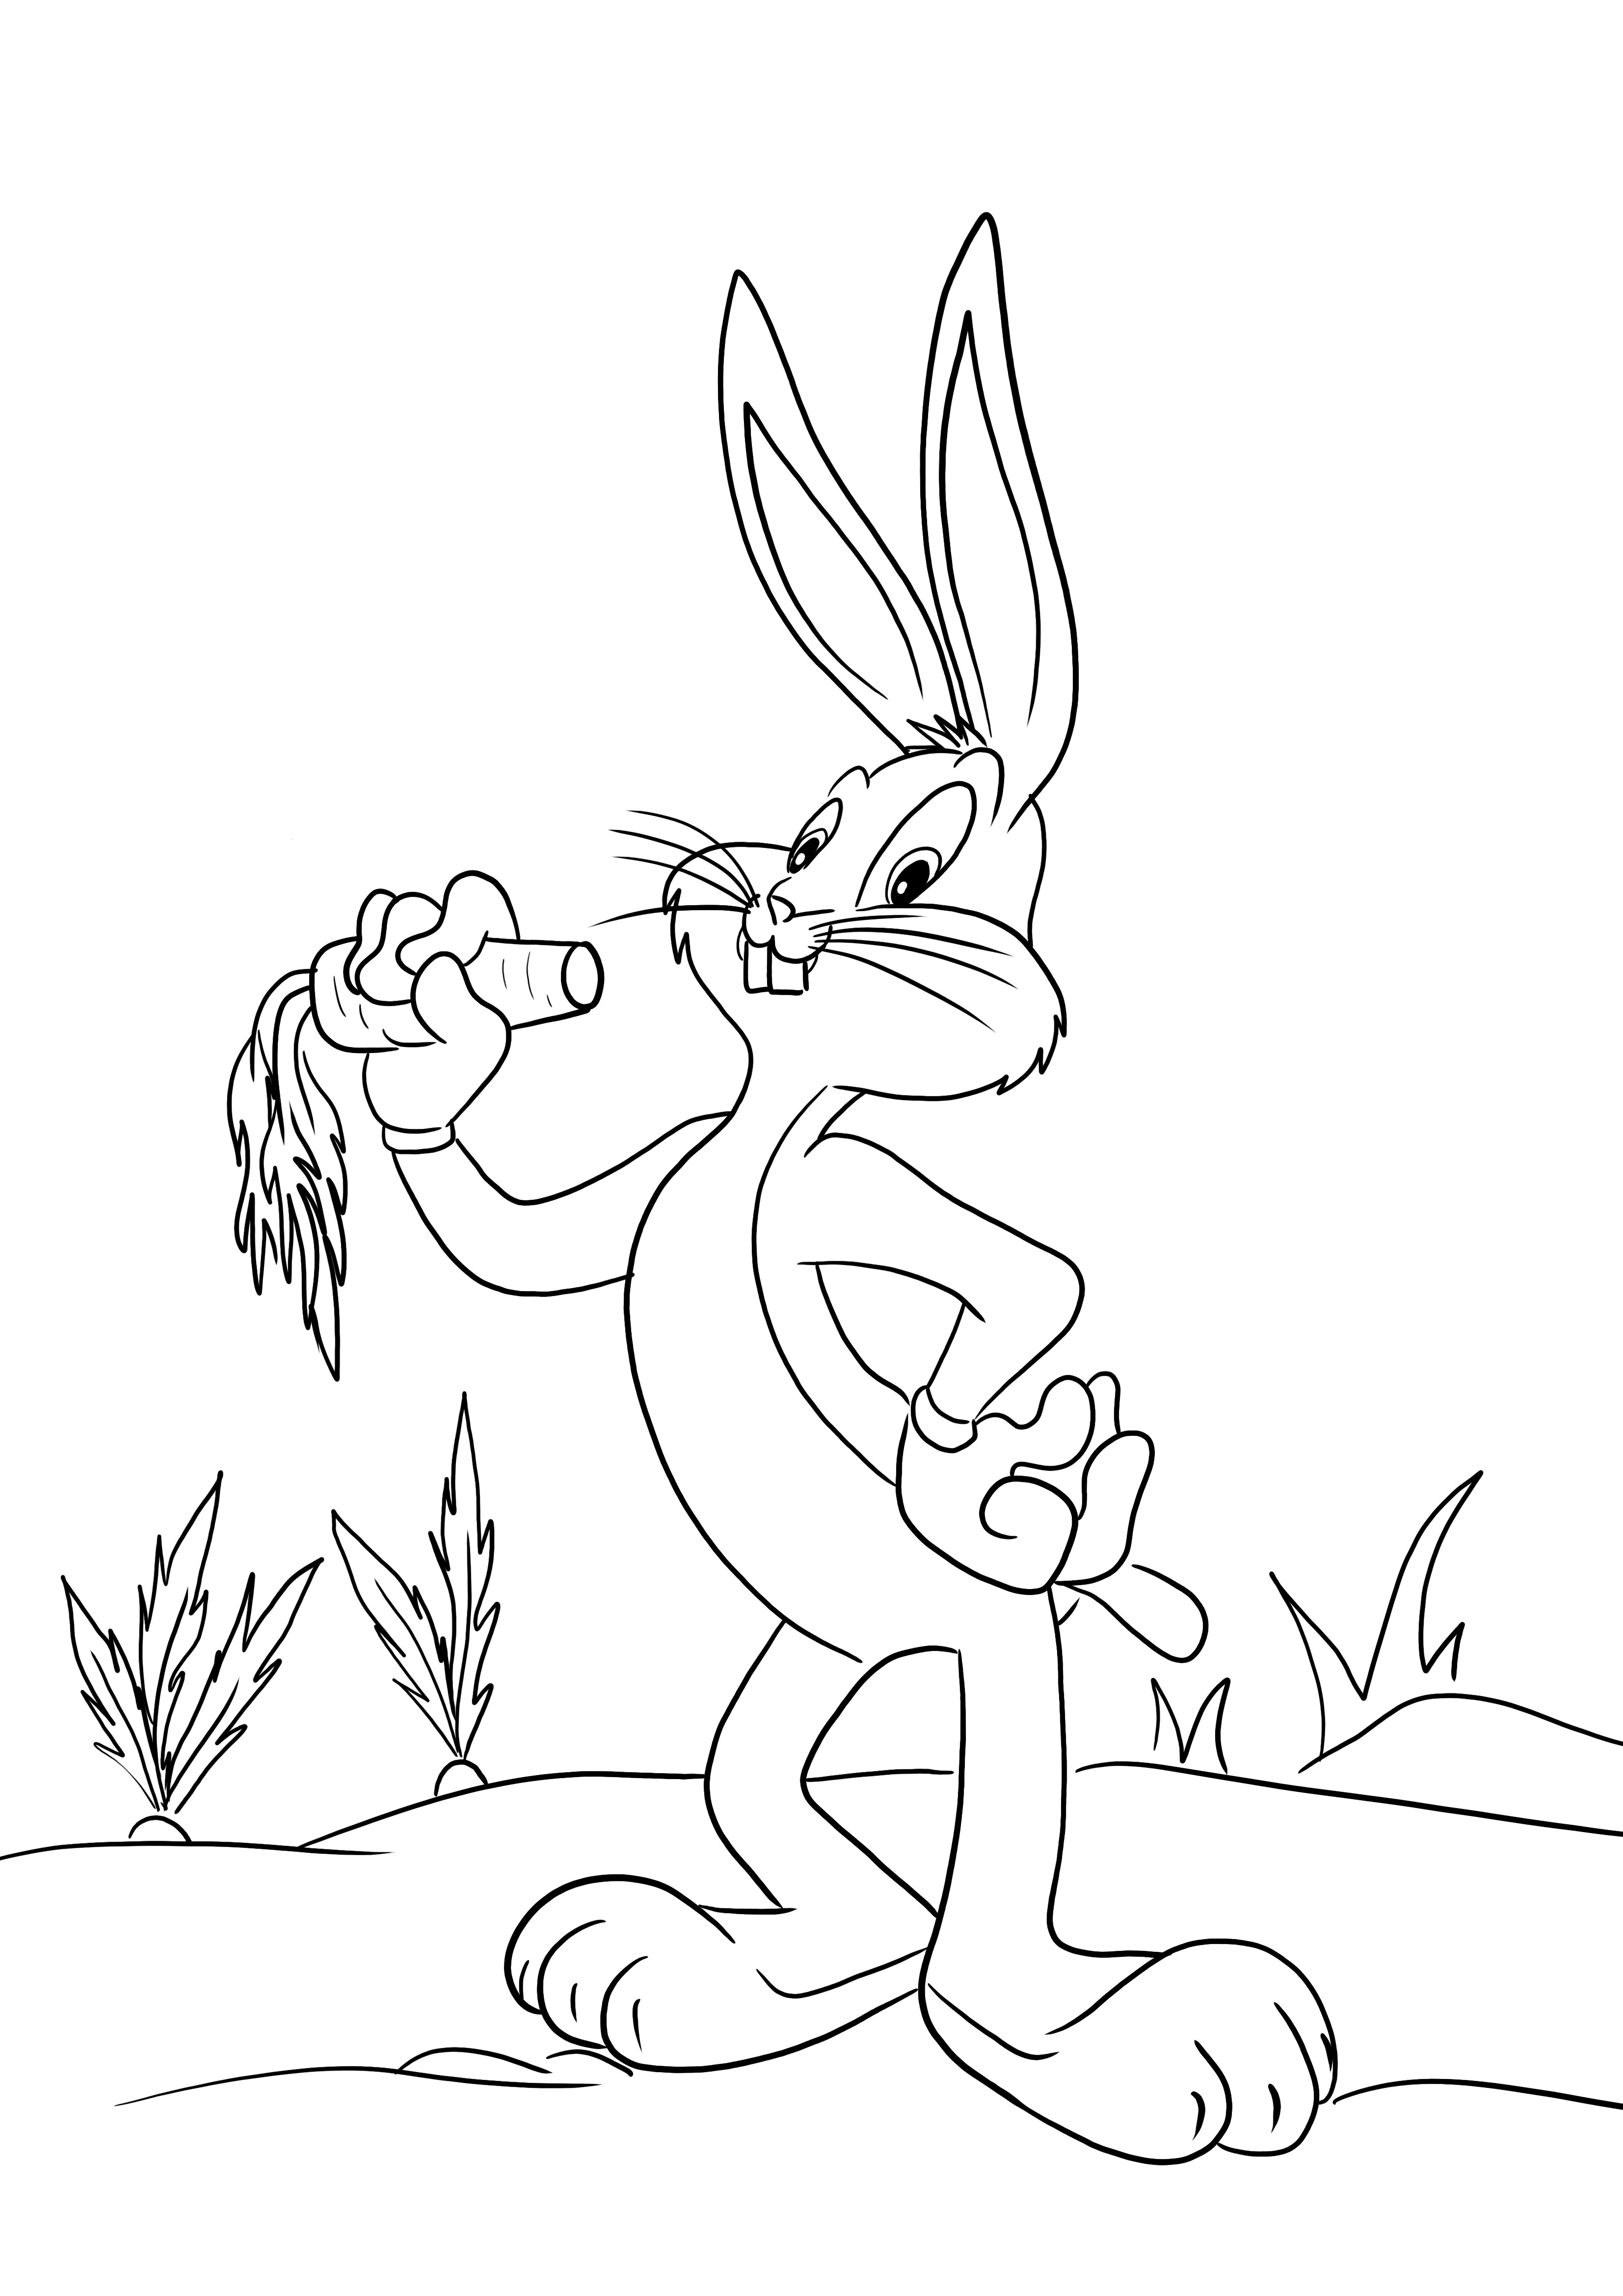 Facile immagine da colorare di Bugs Bunny per i bambini da colorare e divertirsi